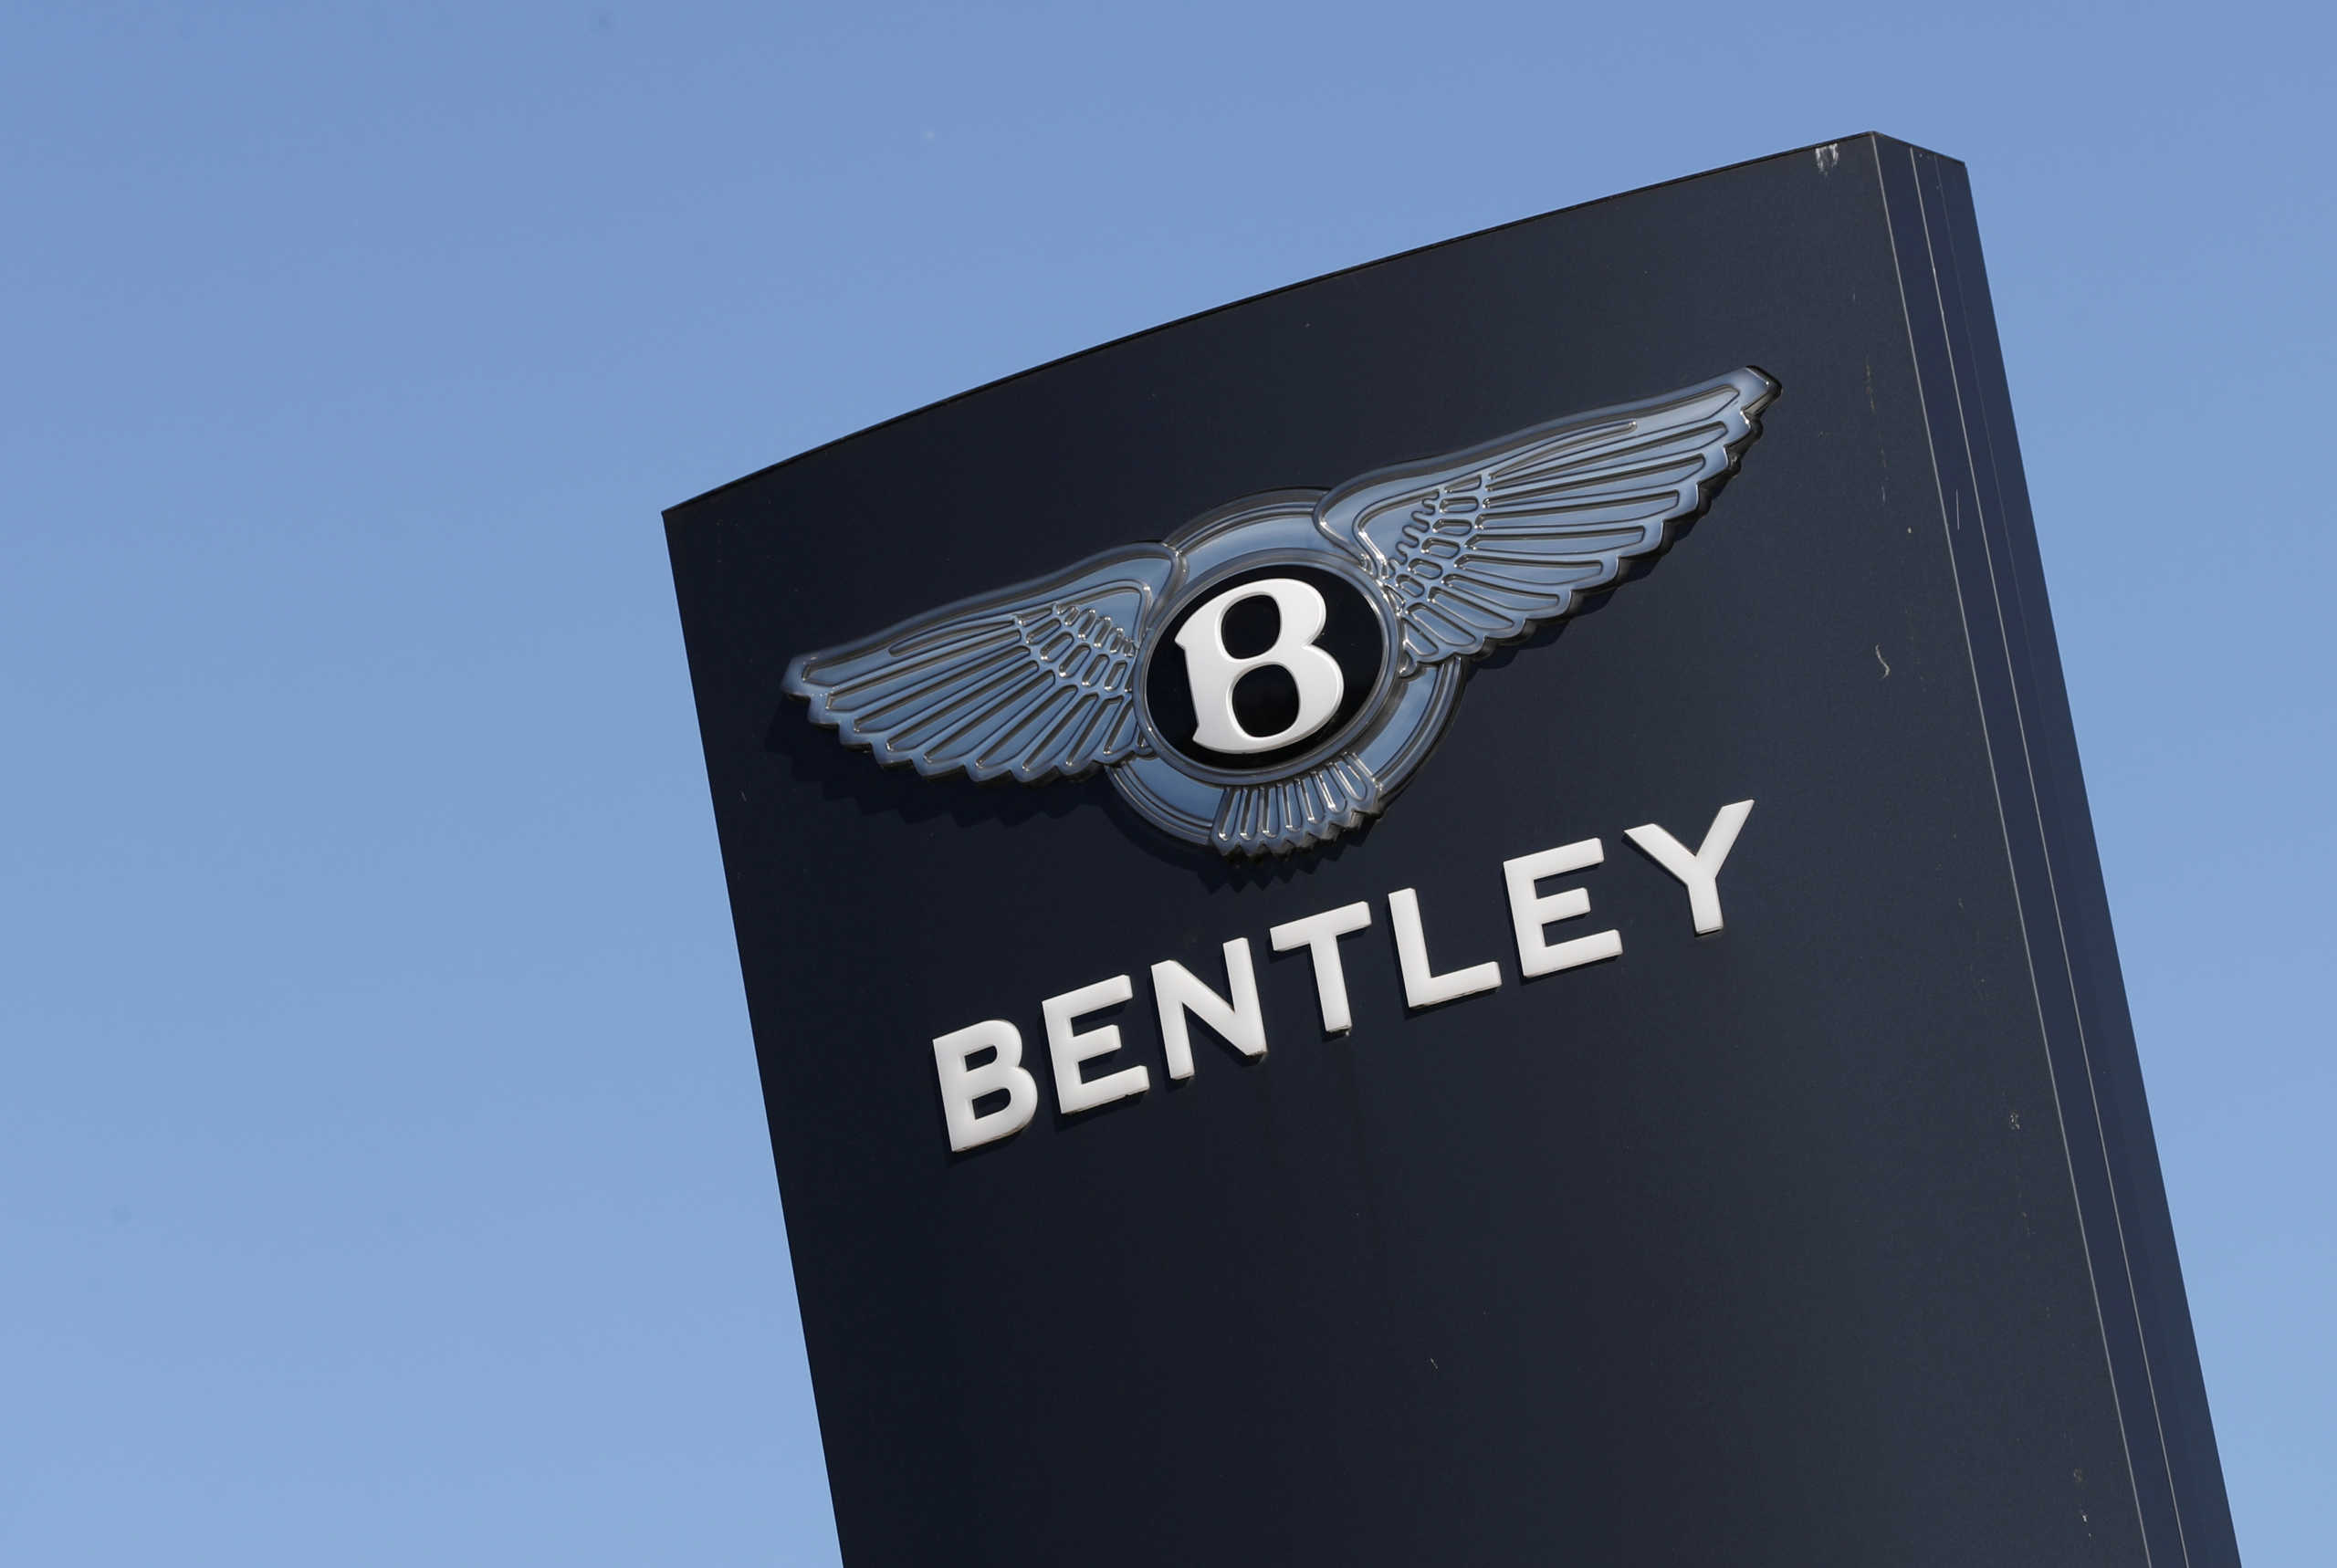 Ο κορονοϊός έπληξε και την Bentley – Κόβει 1000 θέσεις εργασίας στη Βρετανία